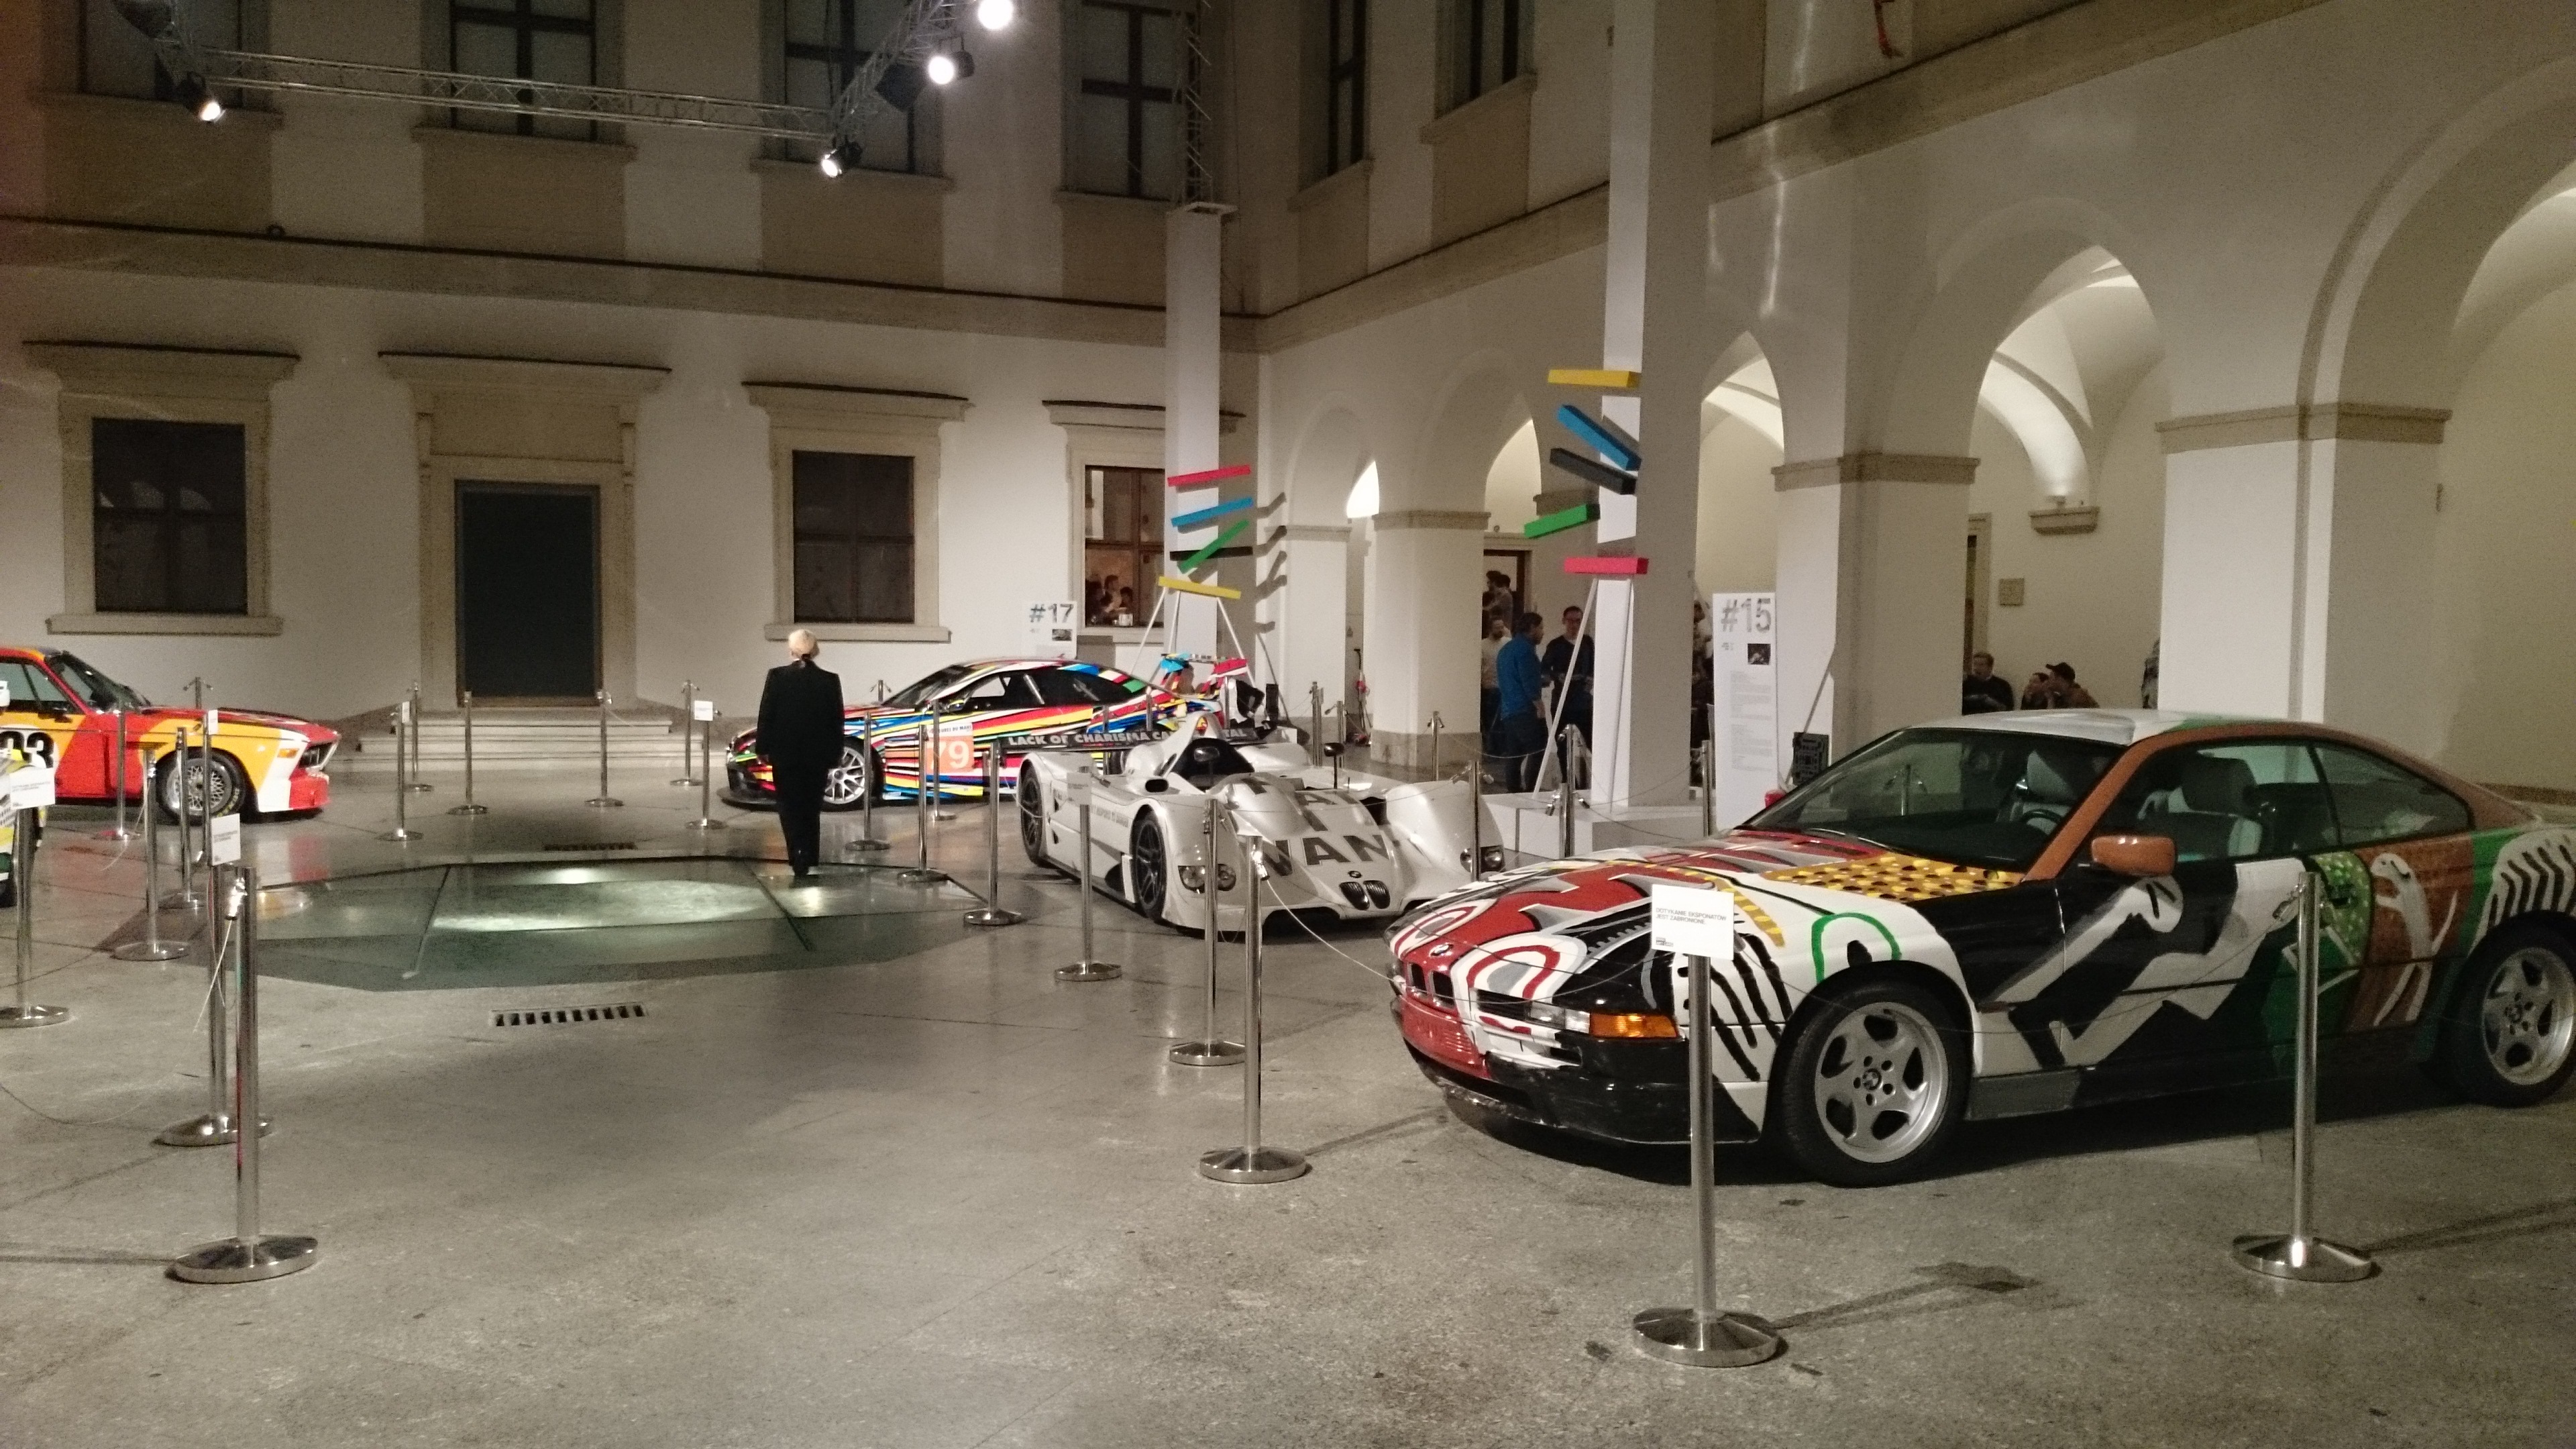 W CSW Zamek Ujazdowski właśnie otworzyła się wystawa Francisa Alysa, ale to co nam się rzuciło w oczy to wystawa Art Cars, na swój sposób kontrowersyjna...